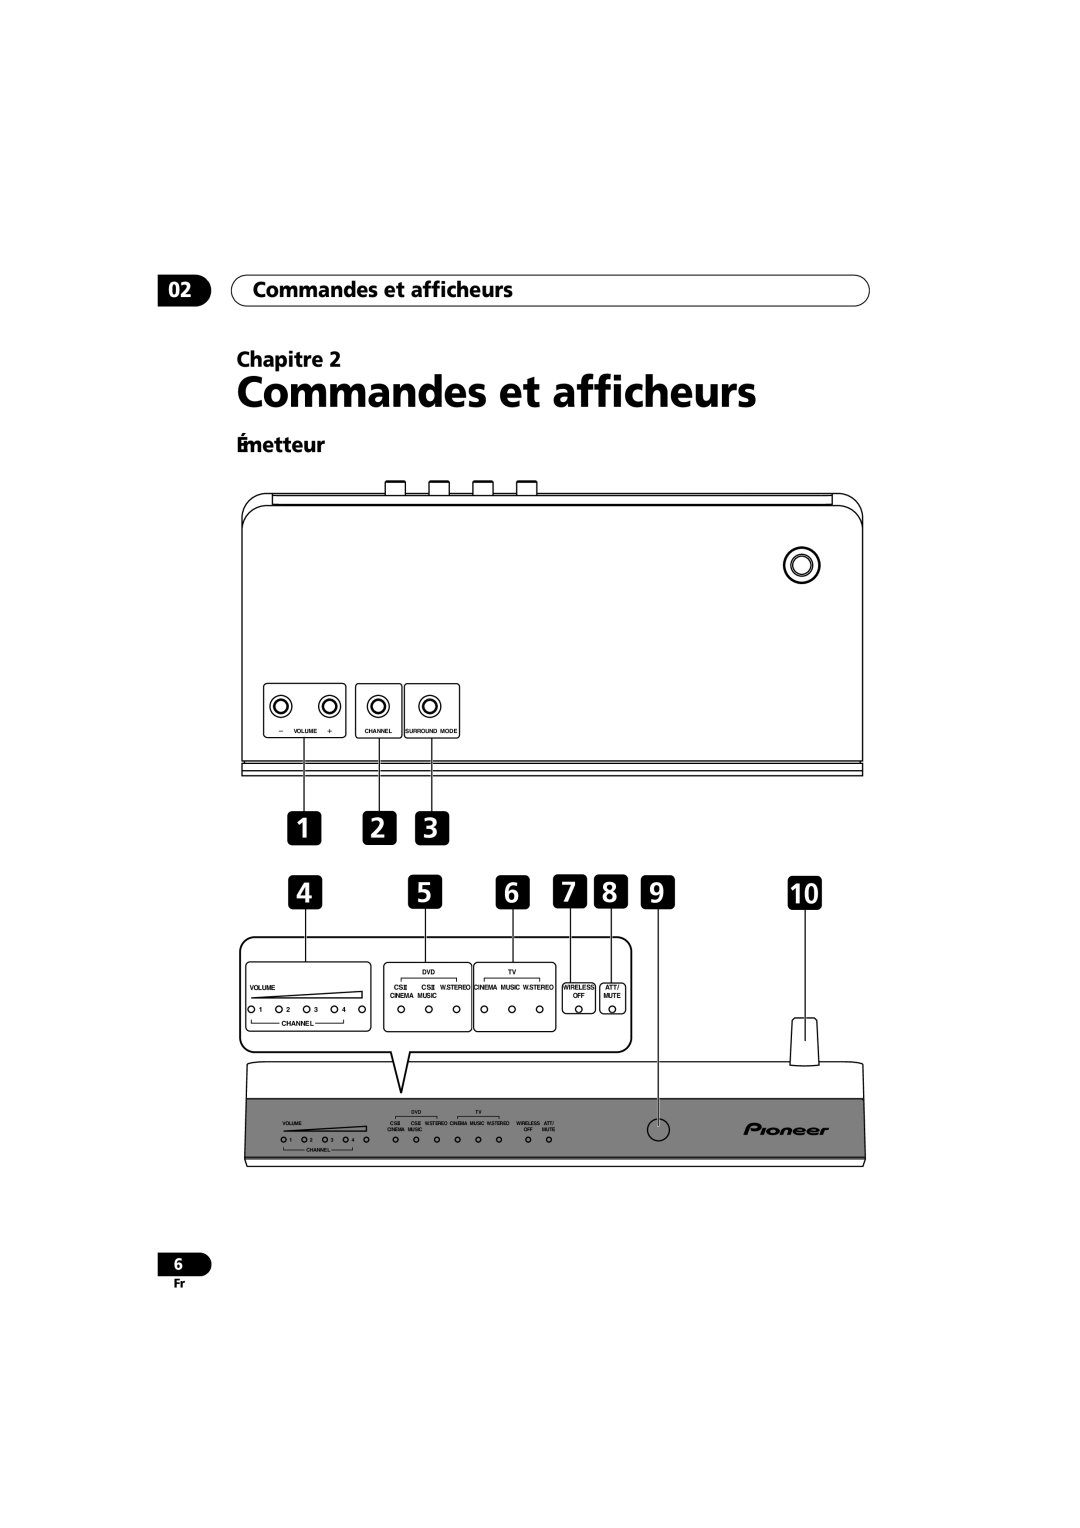 Pioneer XW-HT1 manual 02Commandes et afficheurs Chapitre, Émetteur 